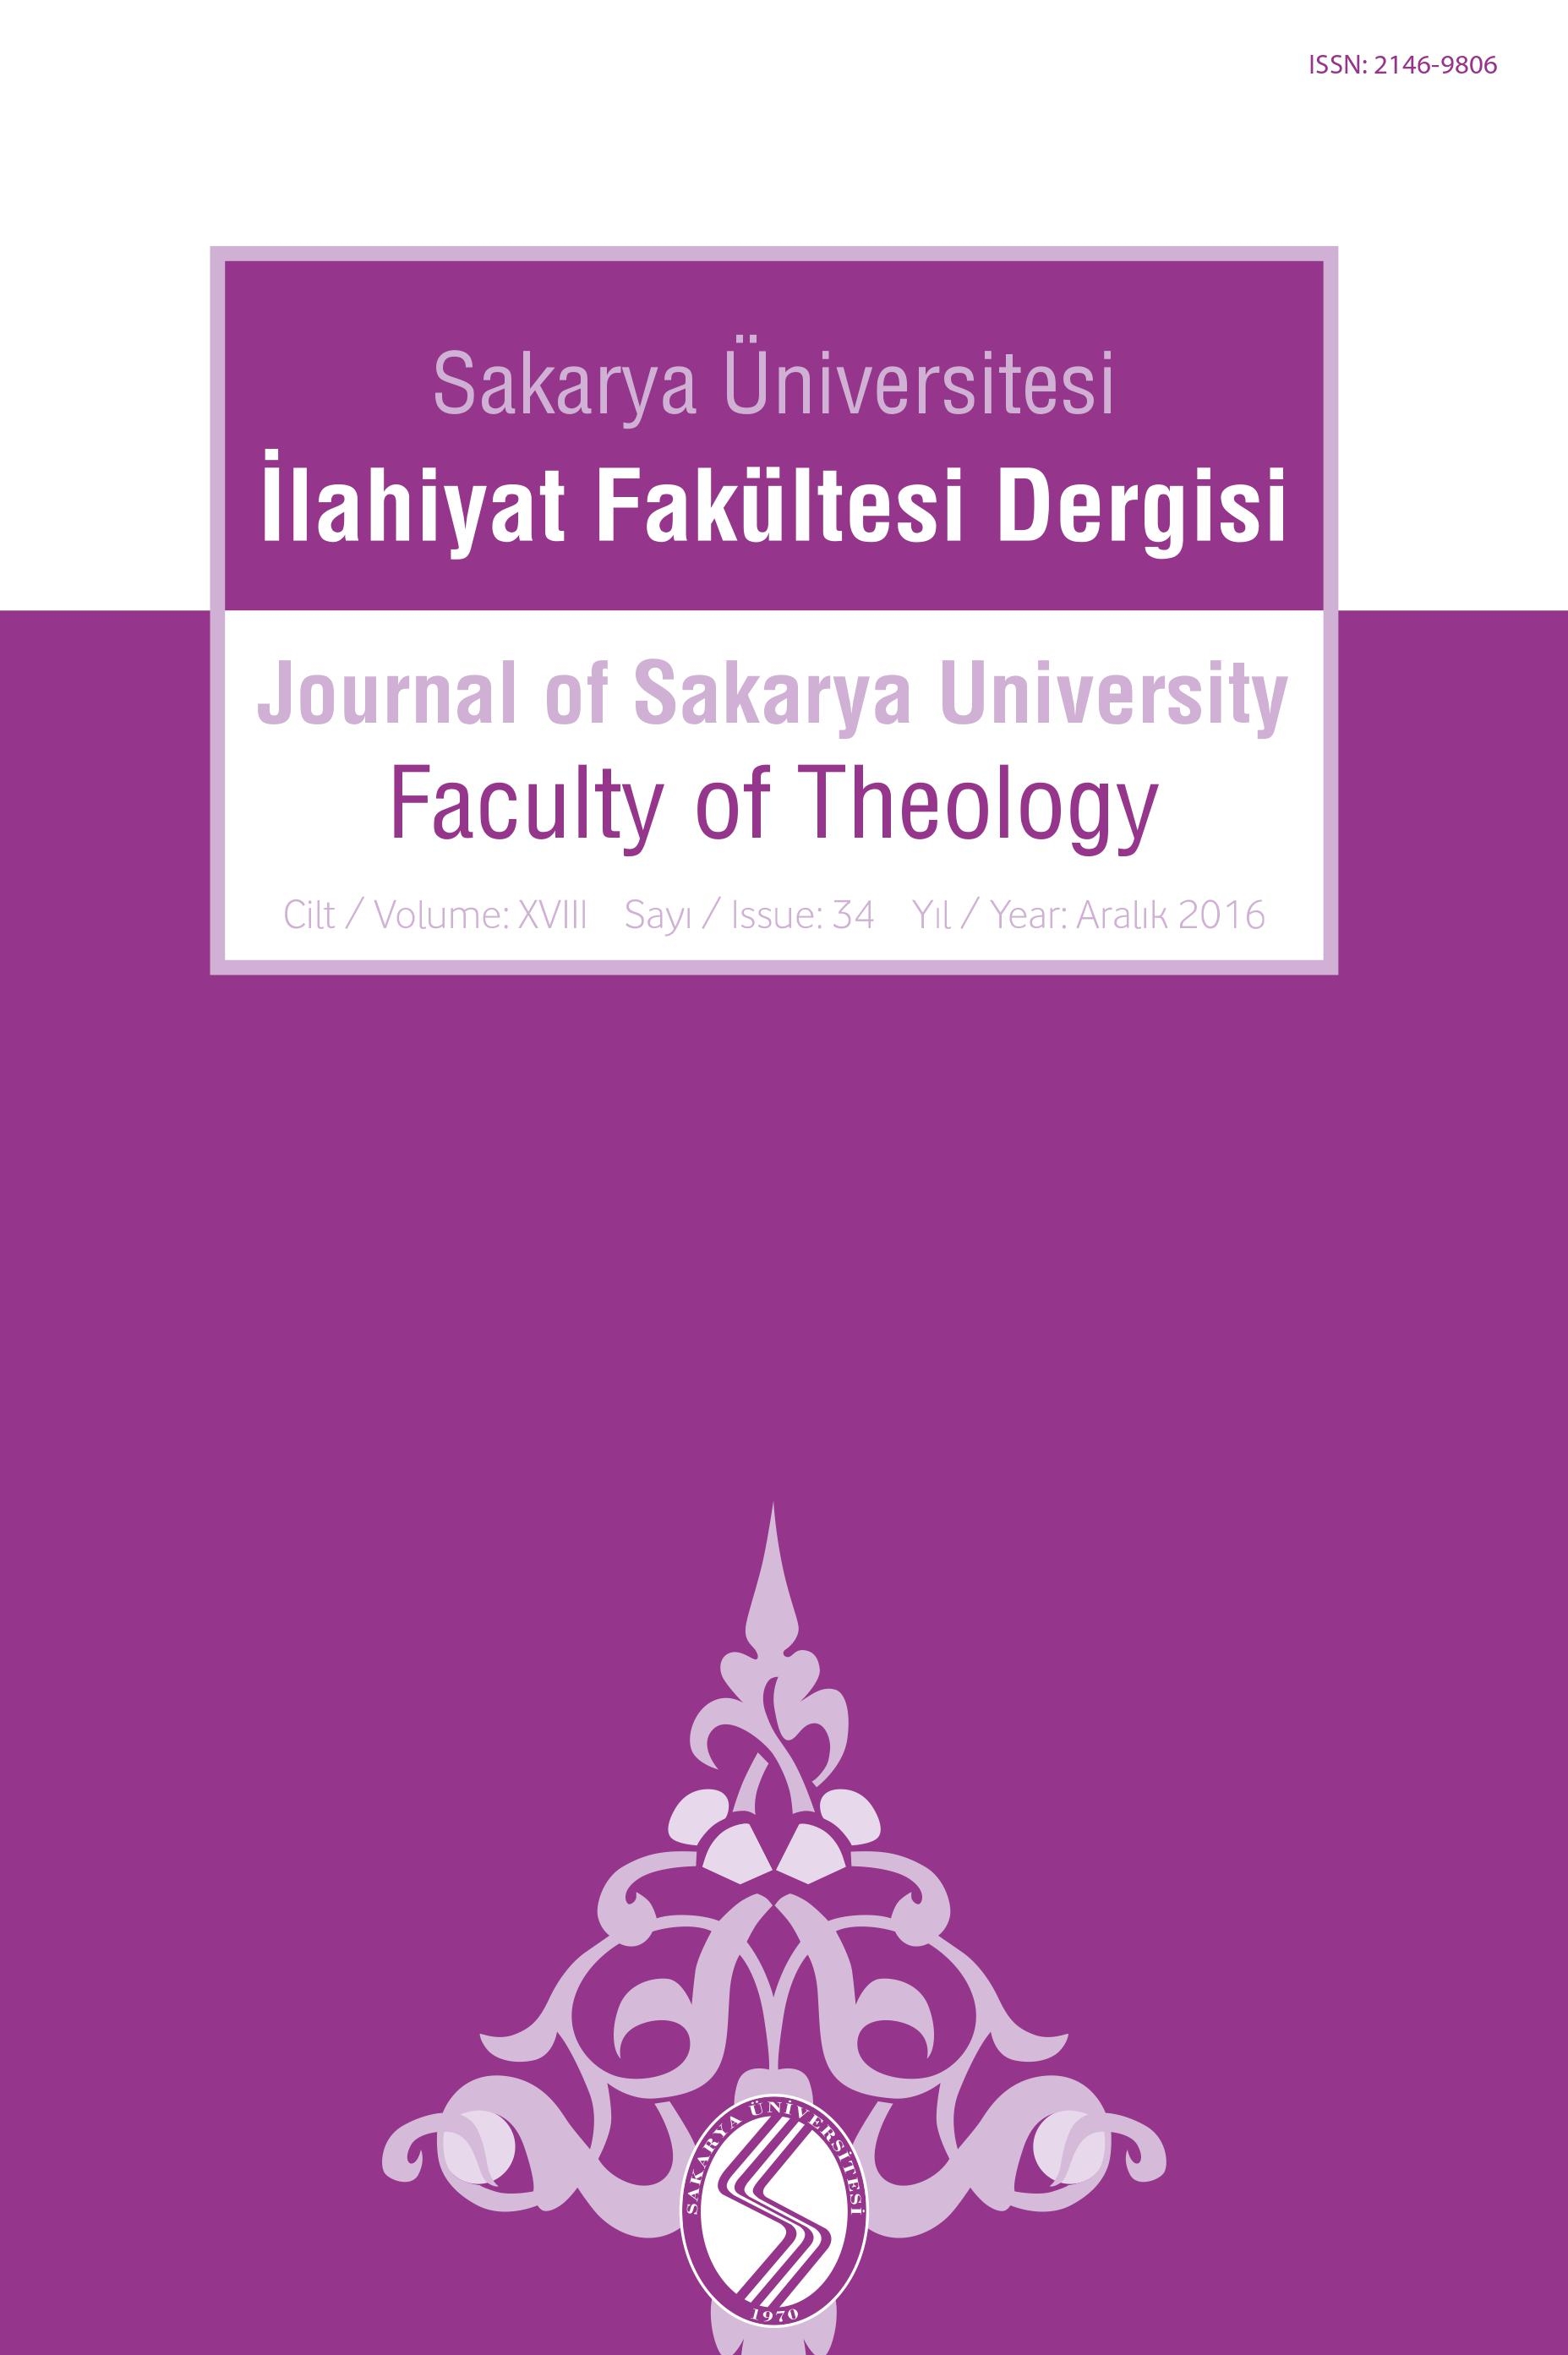 Journal of Sakarya University Faculty of Theology (SAUIFD)